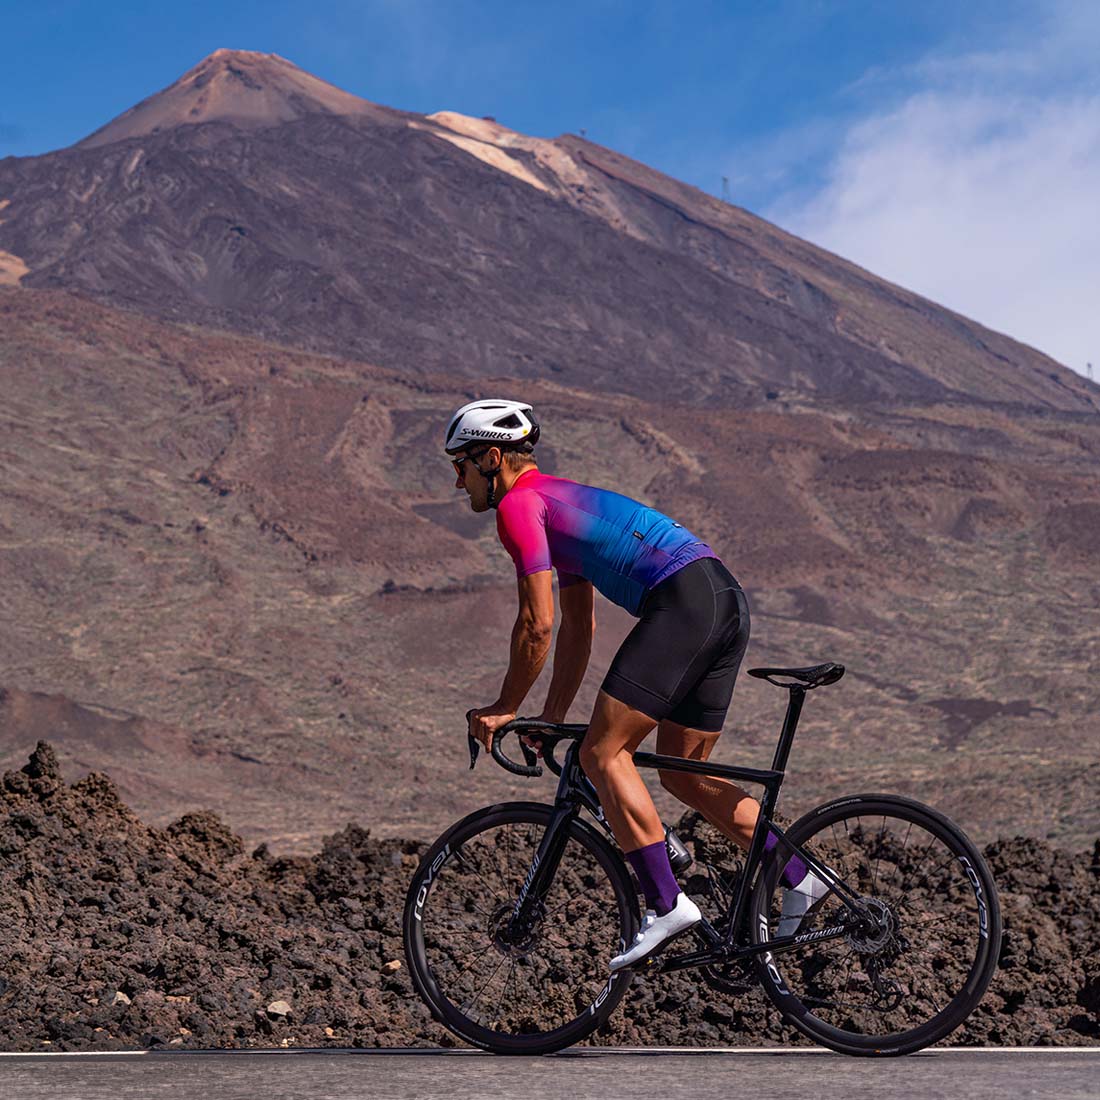 Rennradfahren auf Teneriffa unter dem Vulkan Teide in der Radsportbekleidung von Luxa.